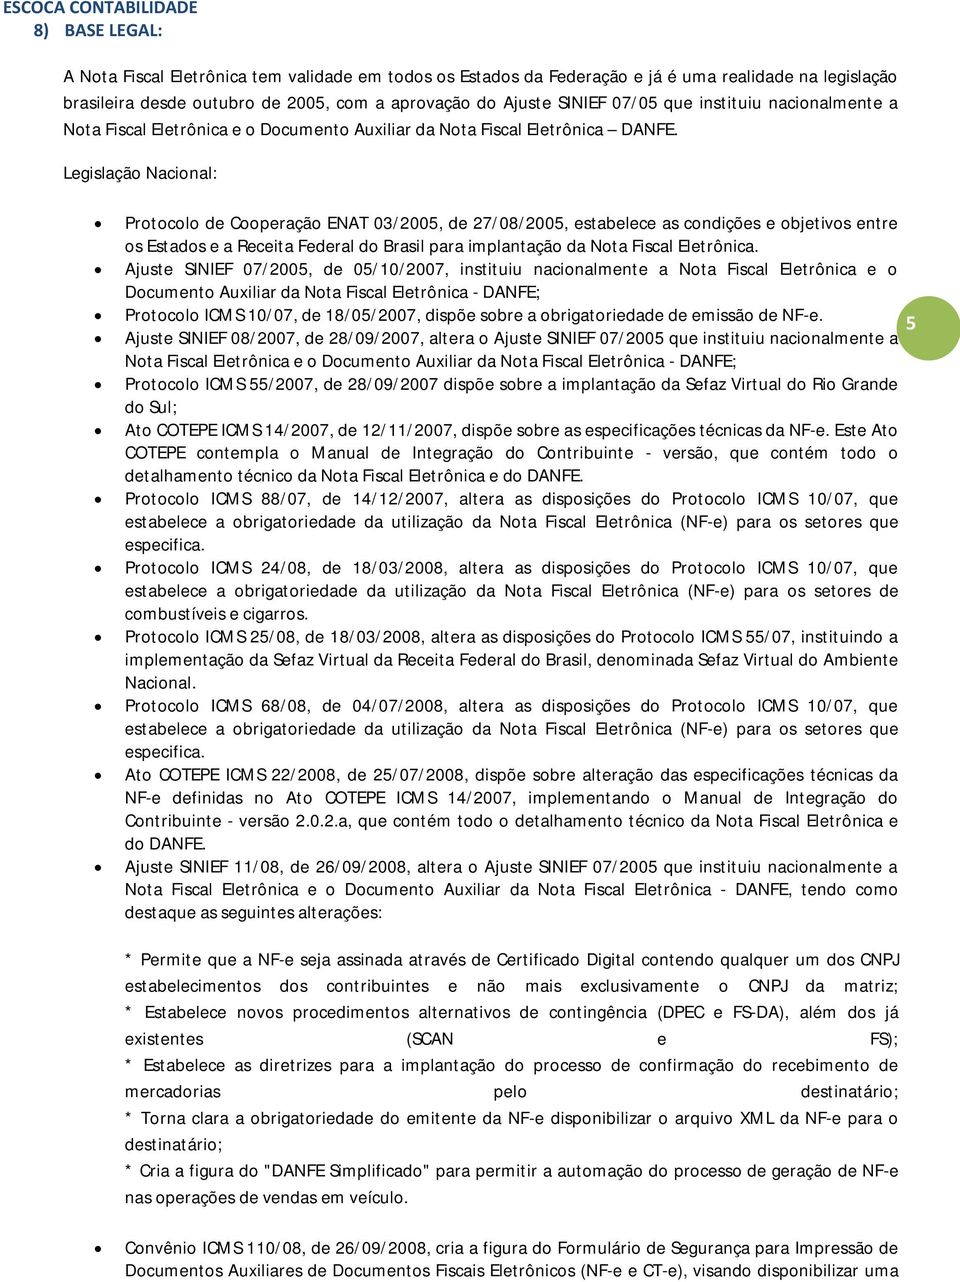 Legislação Nacional: Protocolo de Cooperação ENAT 03/2005, de 27/08/2005, estabelece as condições e objetivos entre os Estados e a Receita Federal do Brasil para implantação da Nota Fiscal Eletrônica.